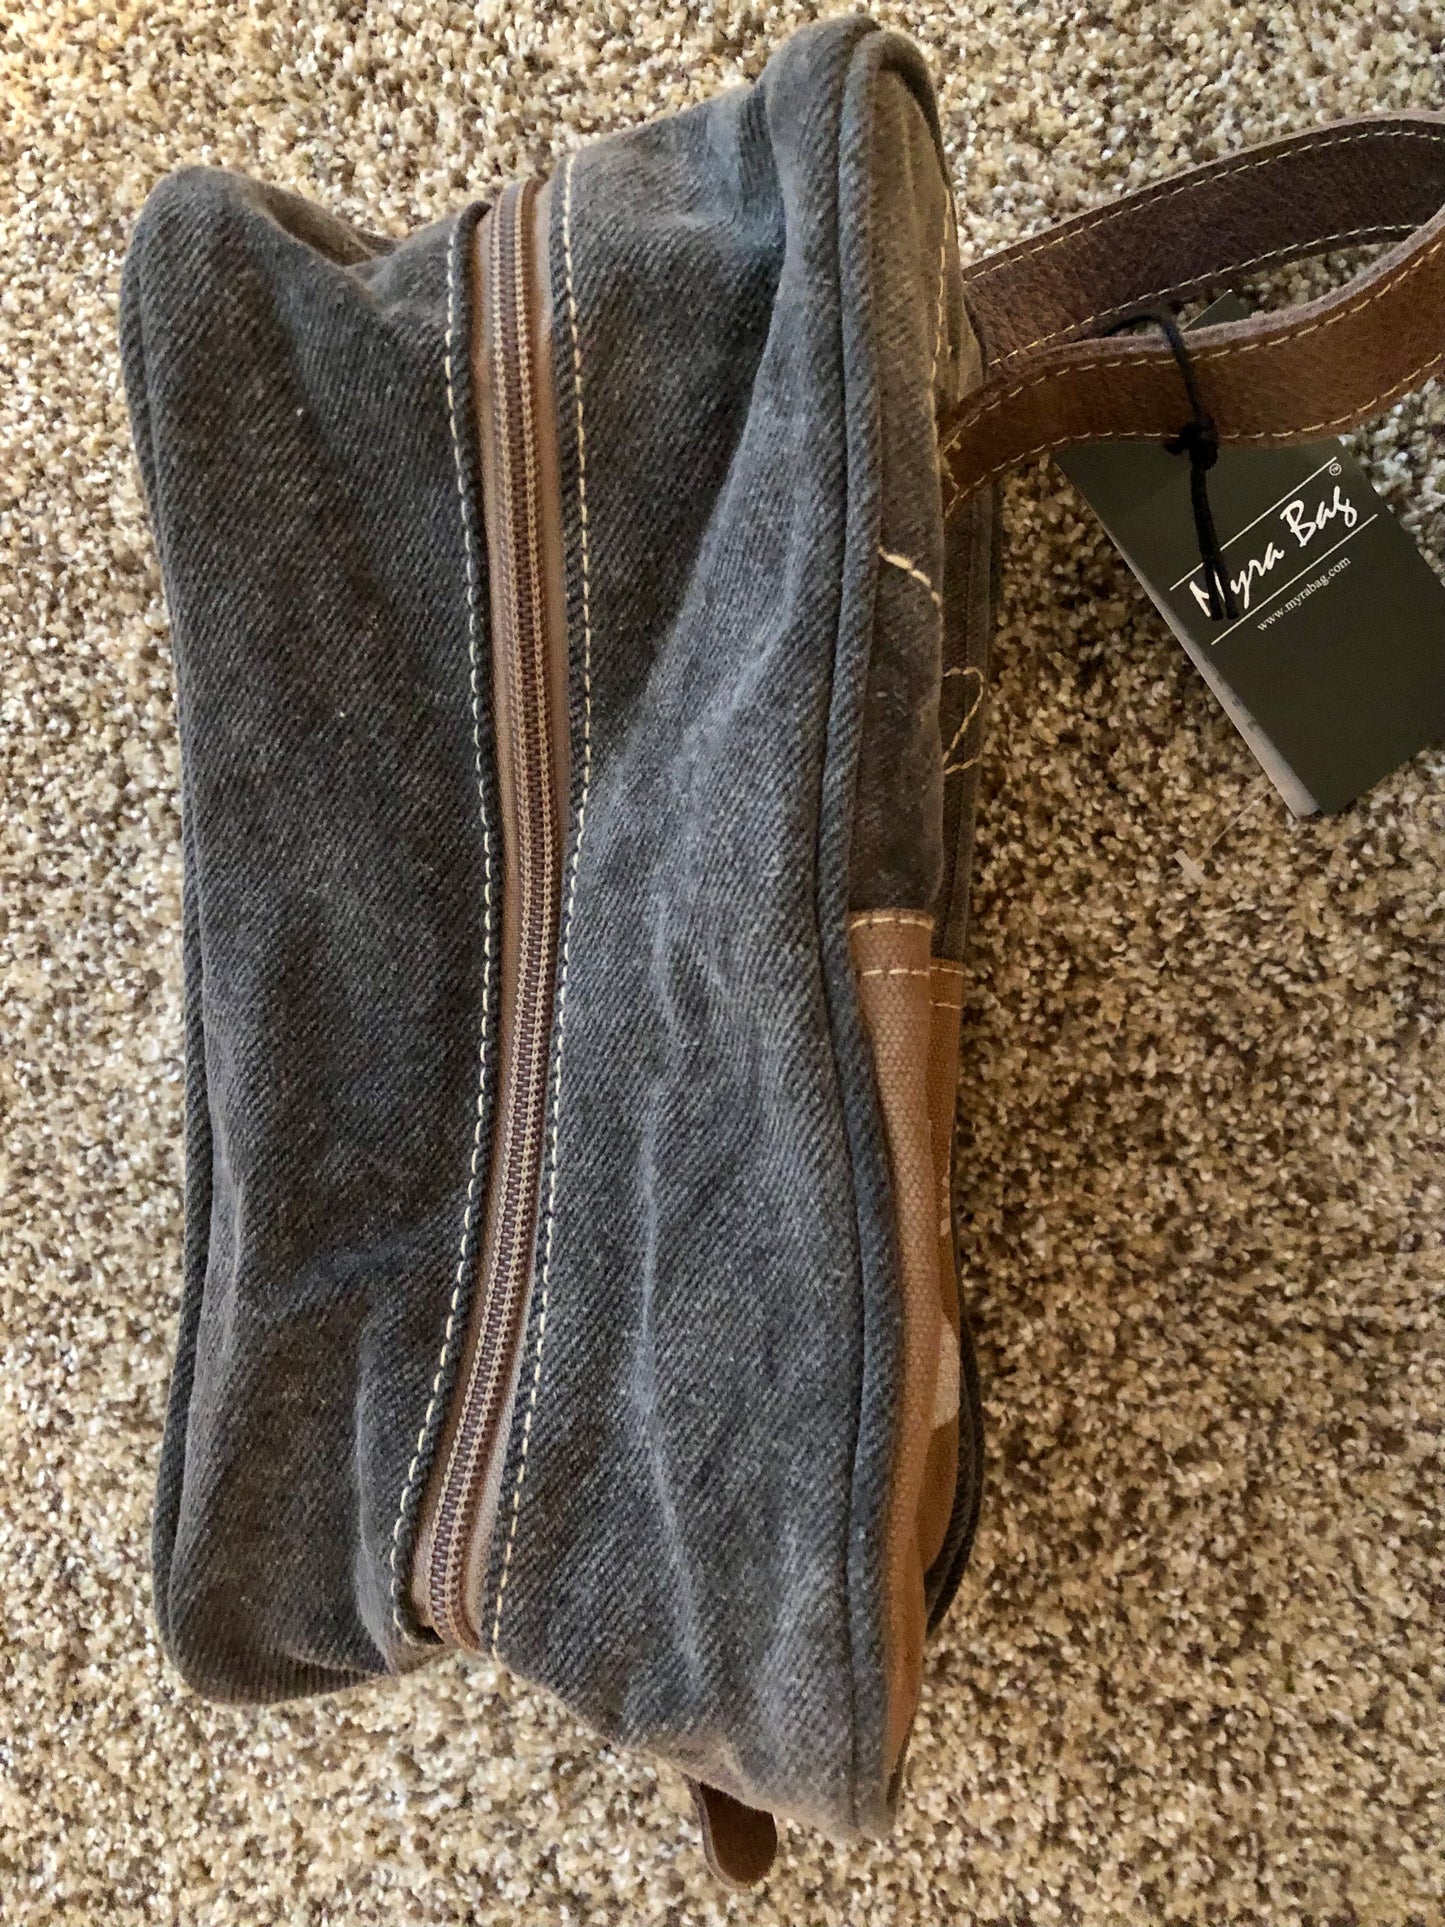 Myra Deer Shaving kit bag